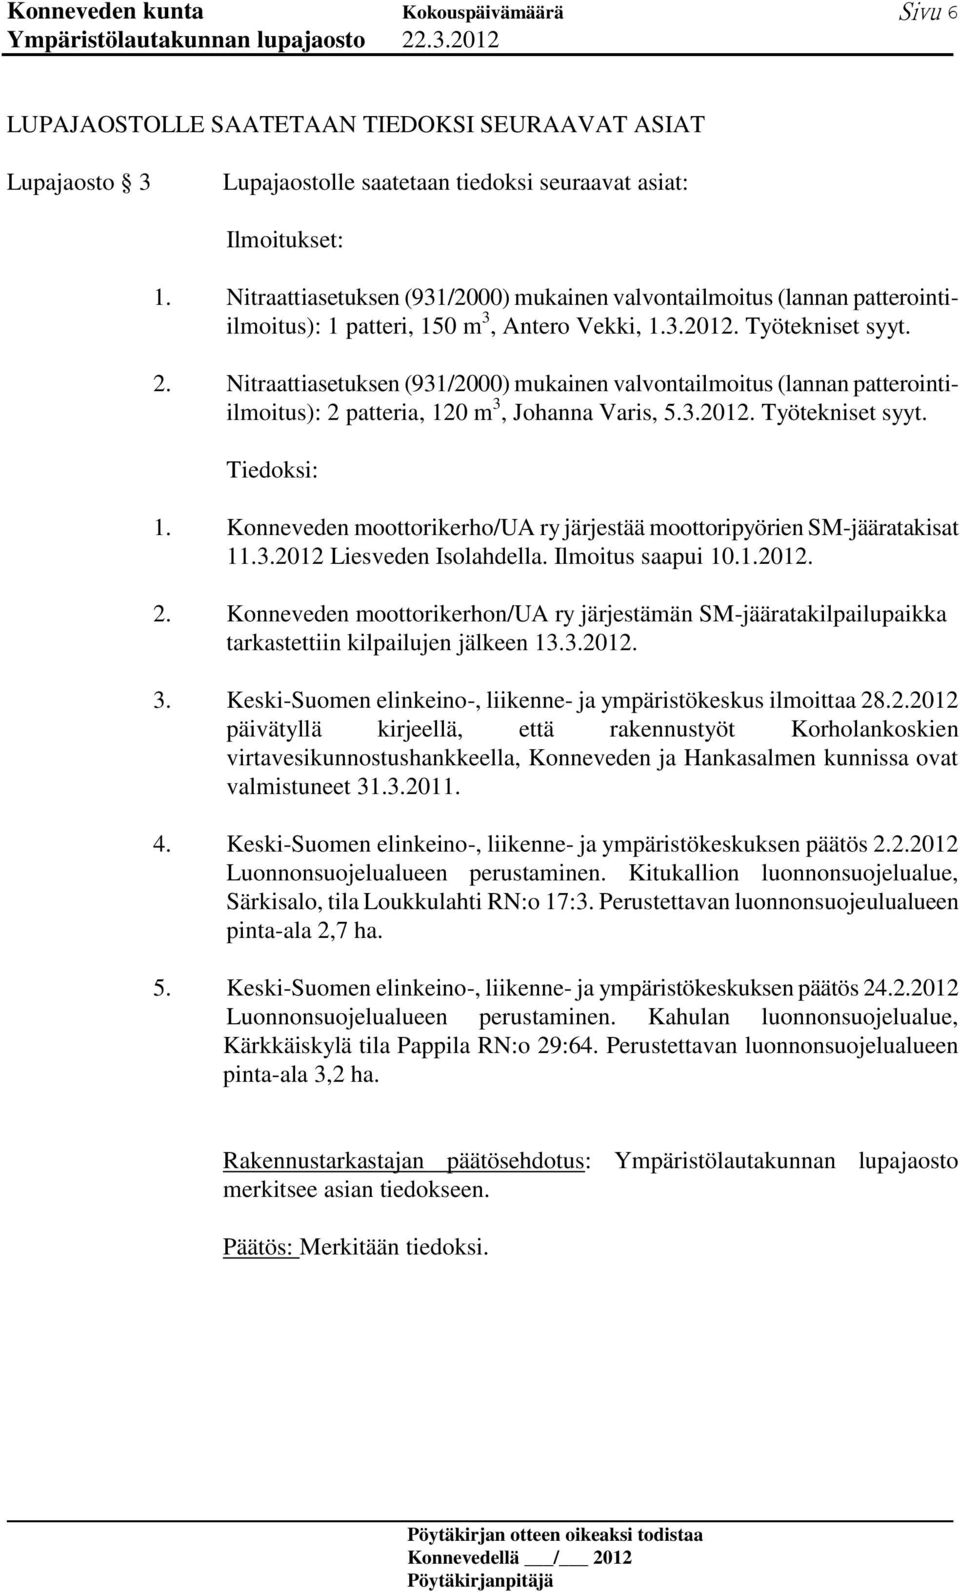 Nitraattiasetuksen (931/2000) mukainen valvontailmoitus (lannan patterointiilmoitus): 2 patteria, 120 m 3, Johanna Varis, 5.3.2012. Työtekniset syyt. Tiedoksi: 1.